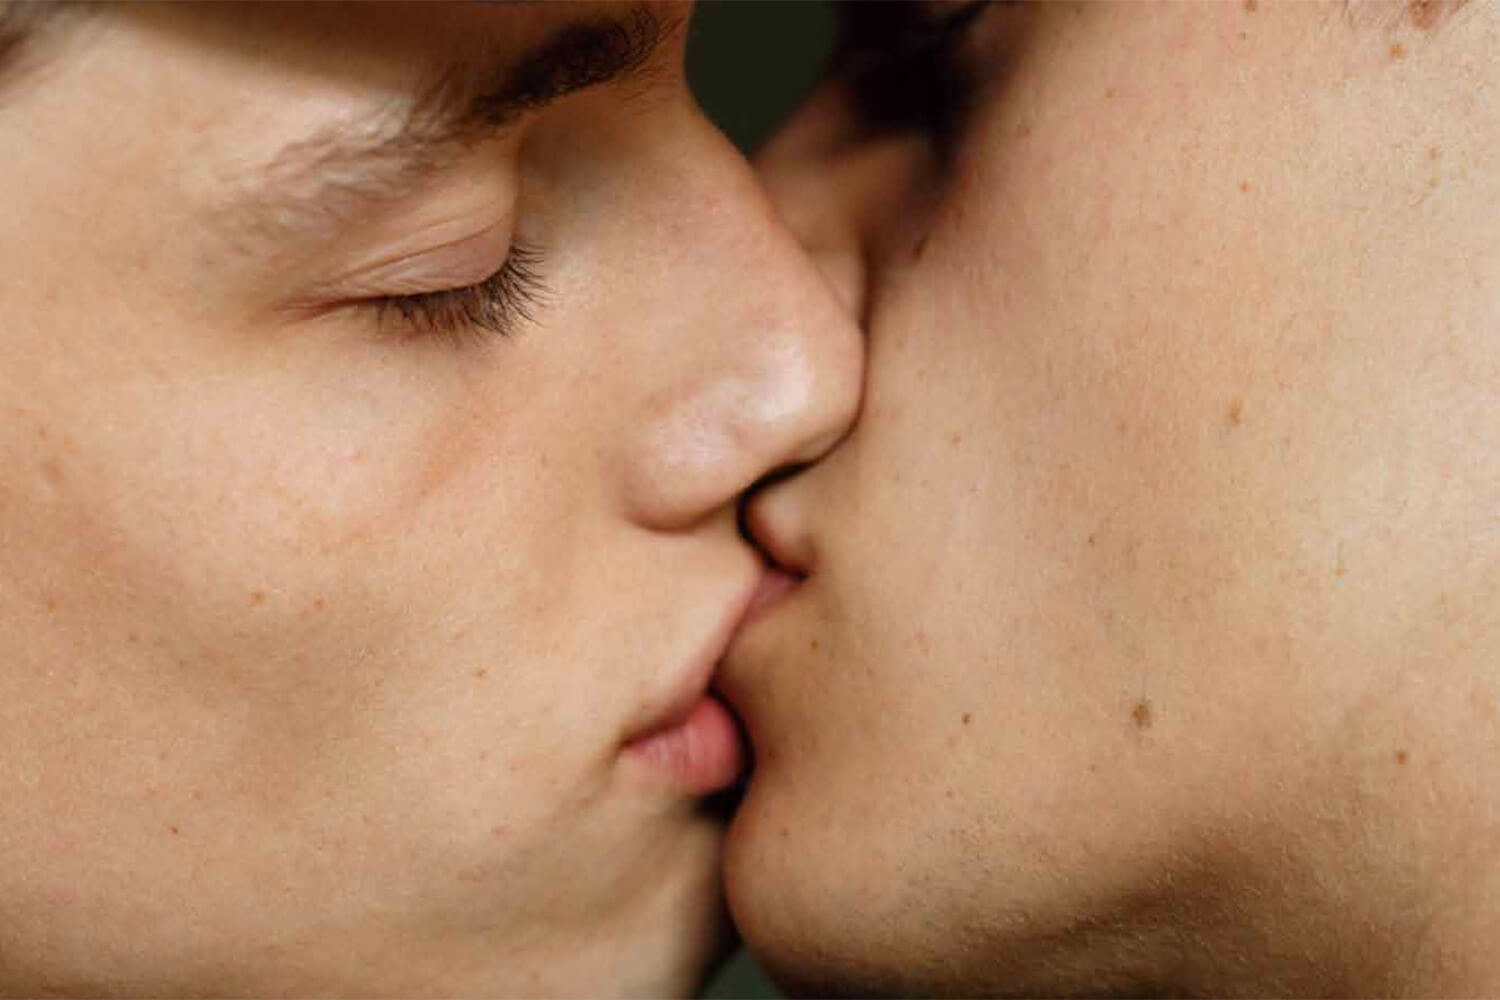 10 racconti erotici gay gratuiti, da leggere in poco tempo